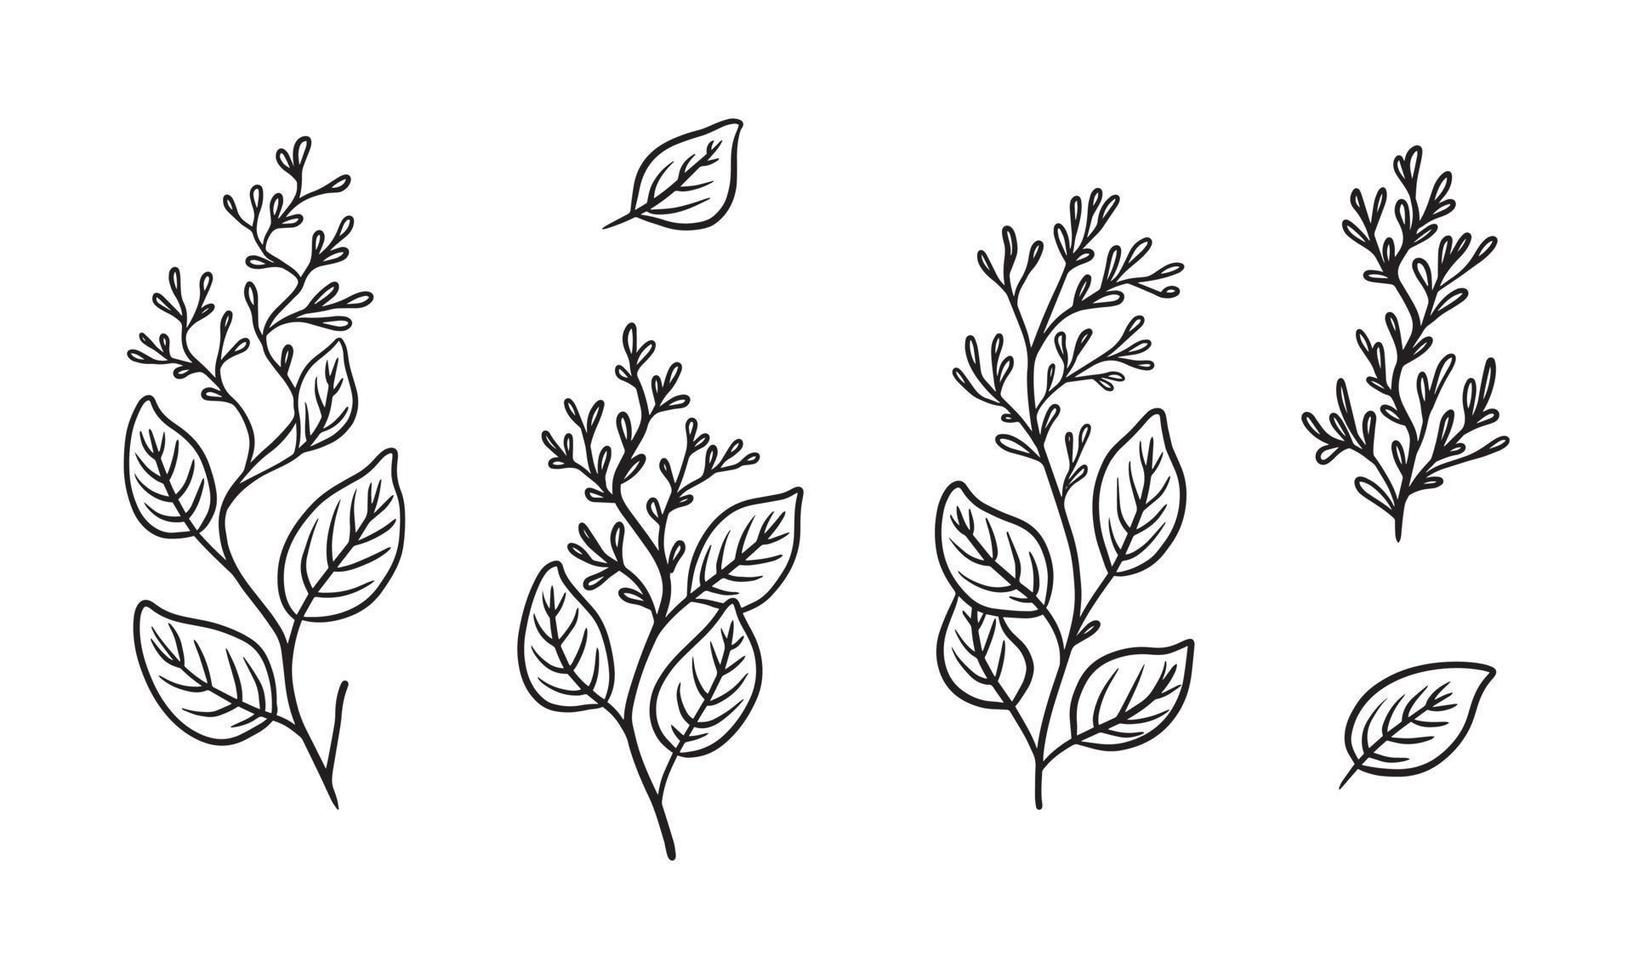 Bio-Eukalyptus-Pflanzenillustration für Abzeichen und Logo. stempeletiketten für etiketten mit isolierten eukalyptusblättern. handgezeichnet natürlich im schlichten rustikalen Design. vektor